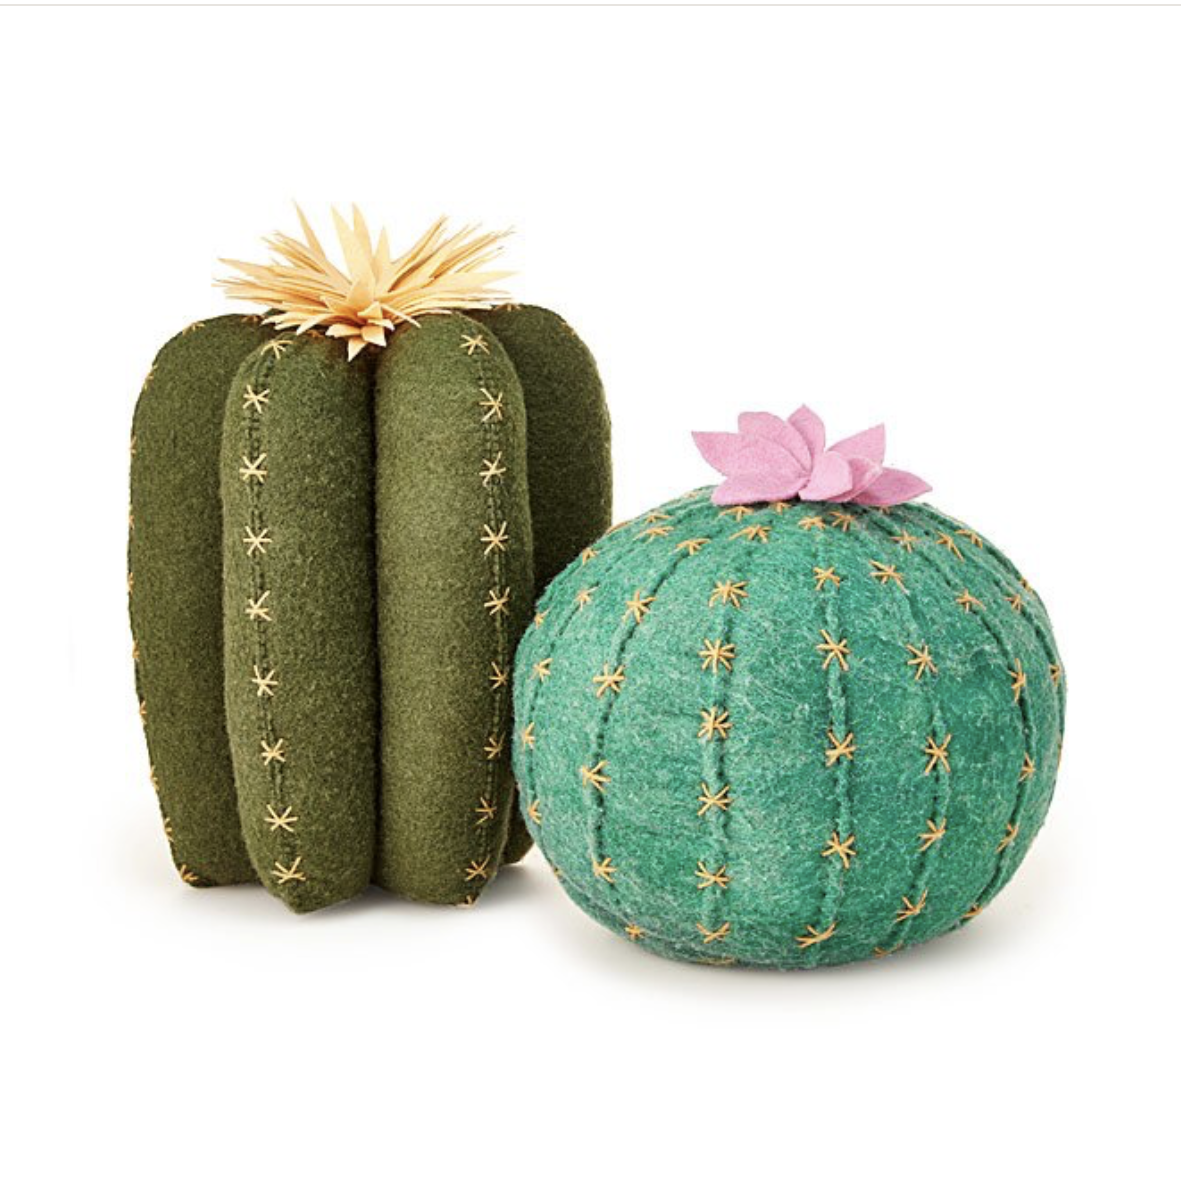 Cactus Bloom Throw Pillows, $28-$40